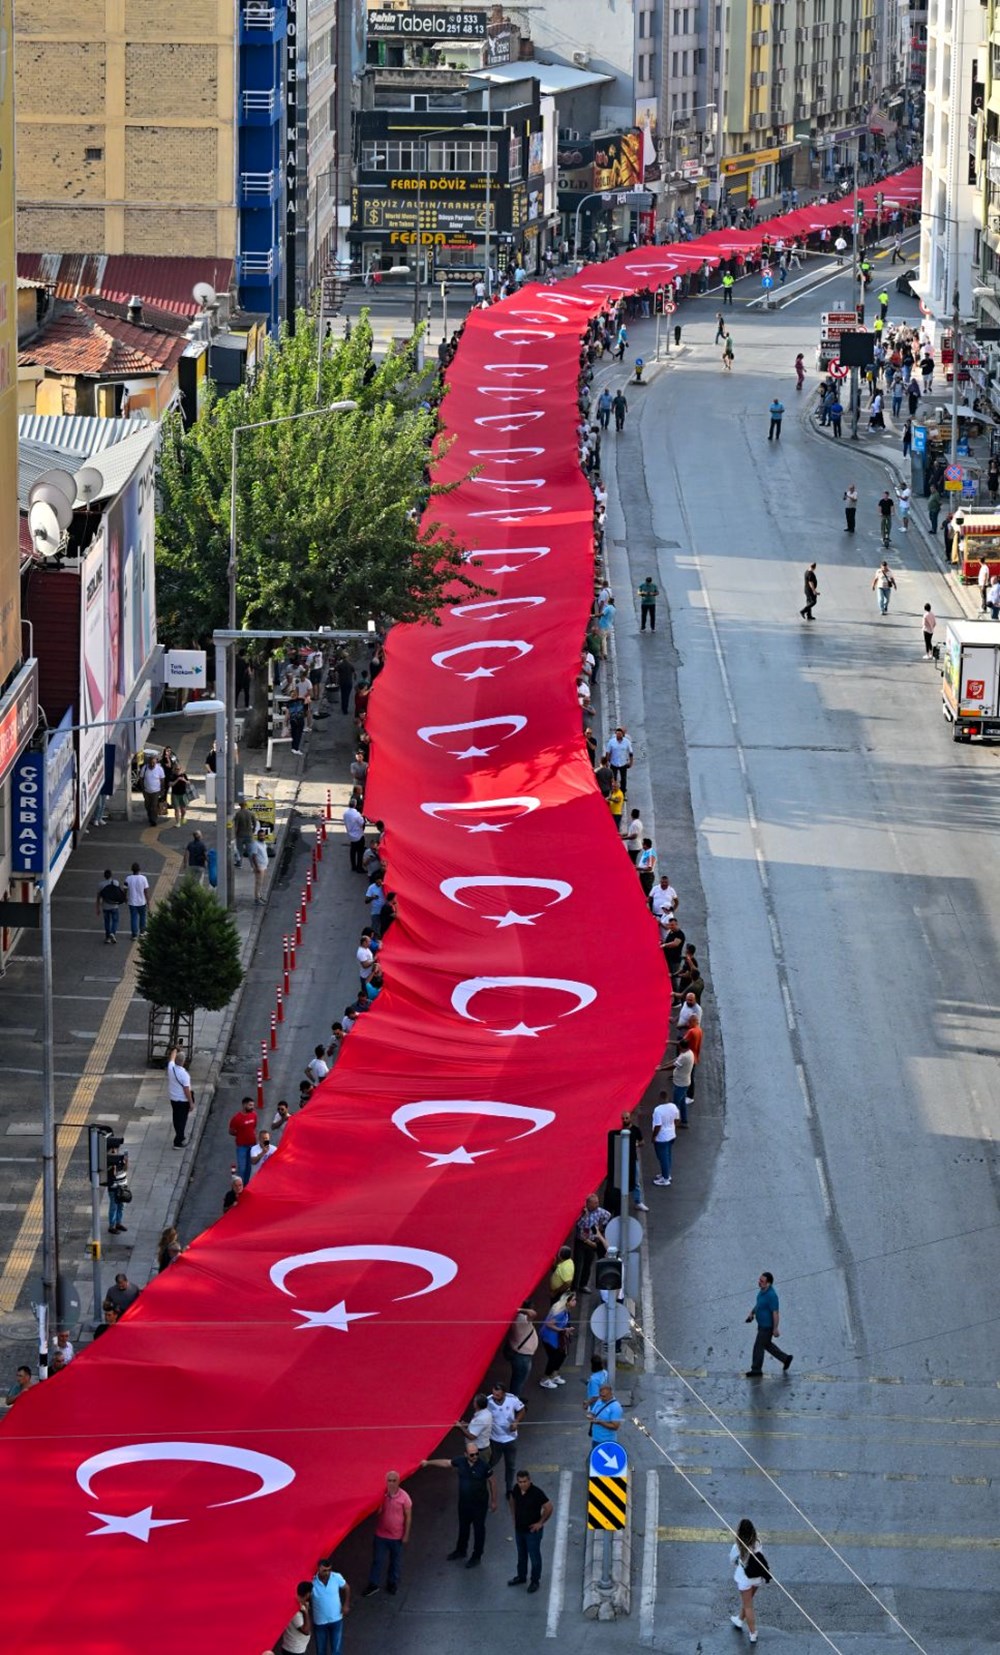 İzmir’dekurtuluş coşkusu (350 metrelik dev bayrak açıldı) - 8